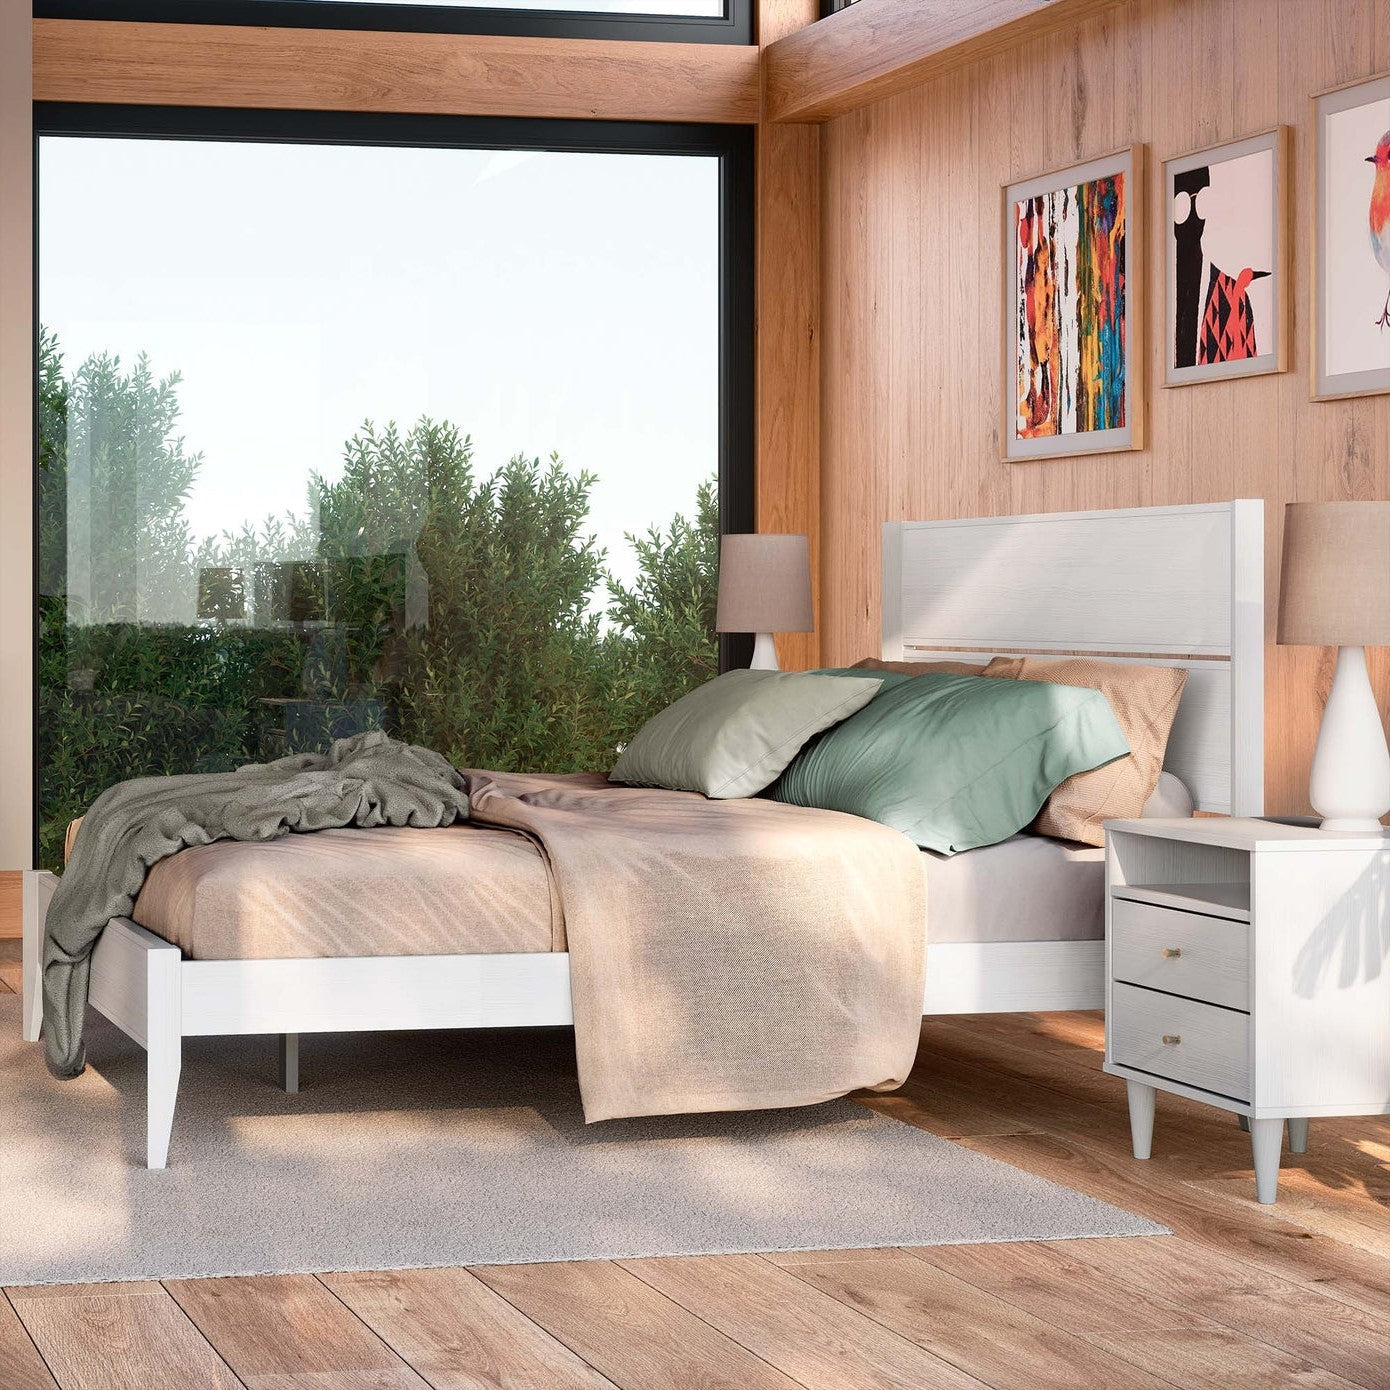 Bedroom > Bed Frames > Platform Beds - Full Size Rustic White Mid Century Slatted Platform Bed